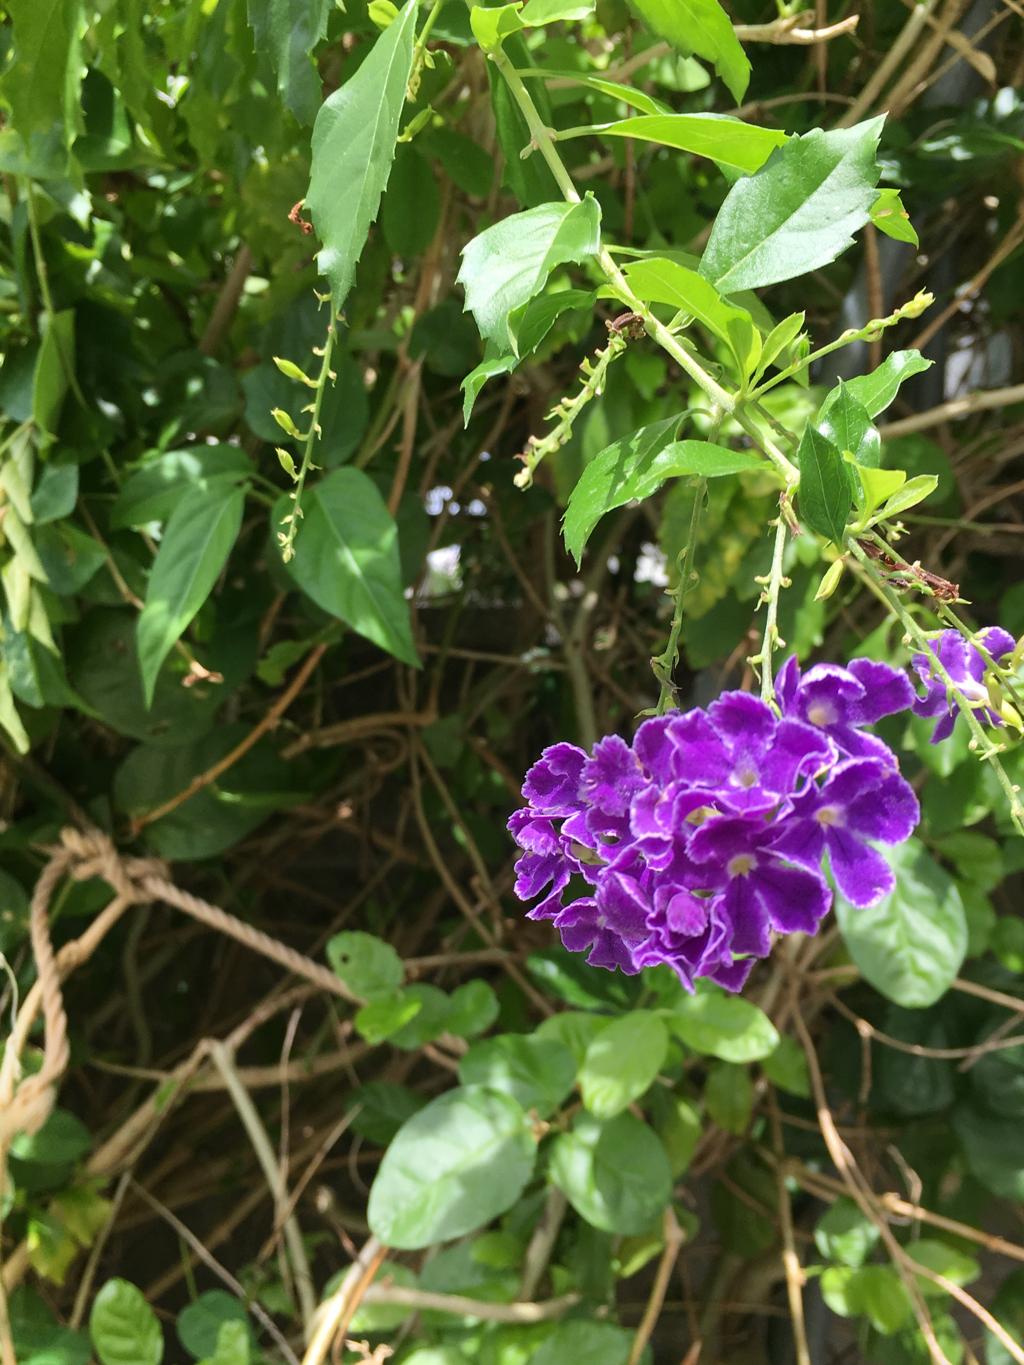  紫の花